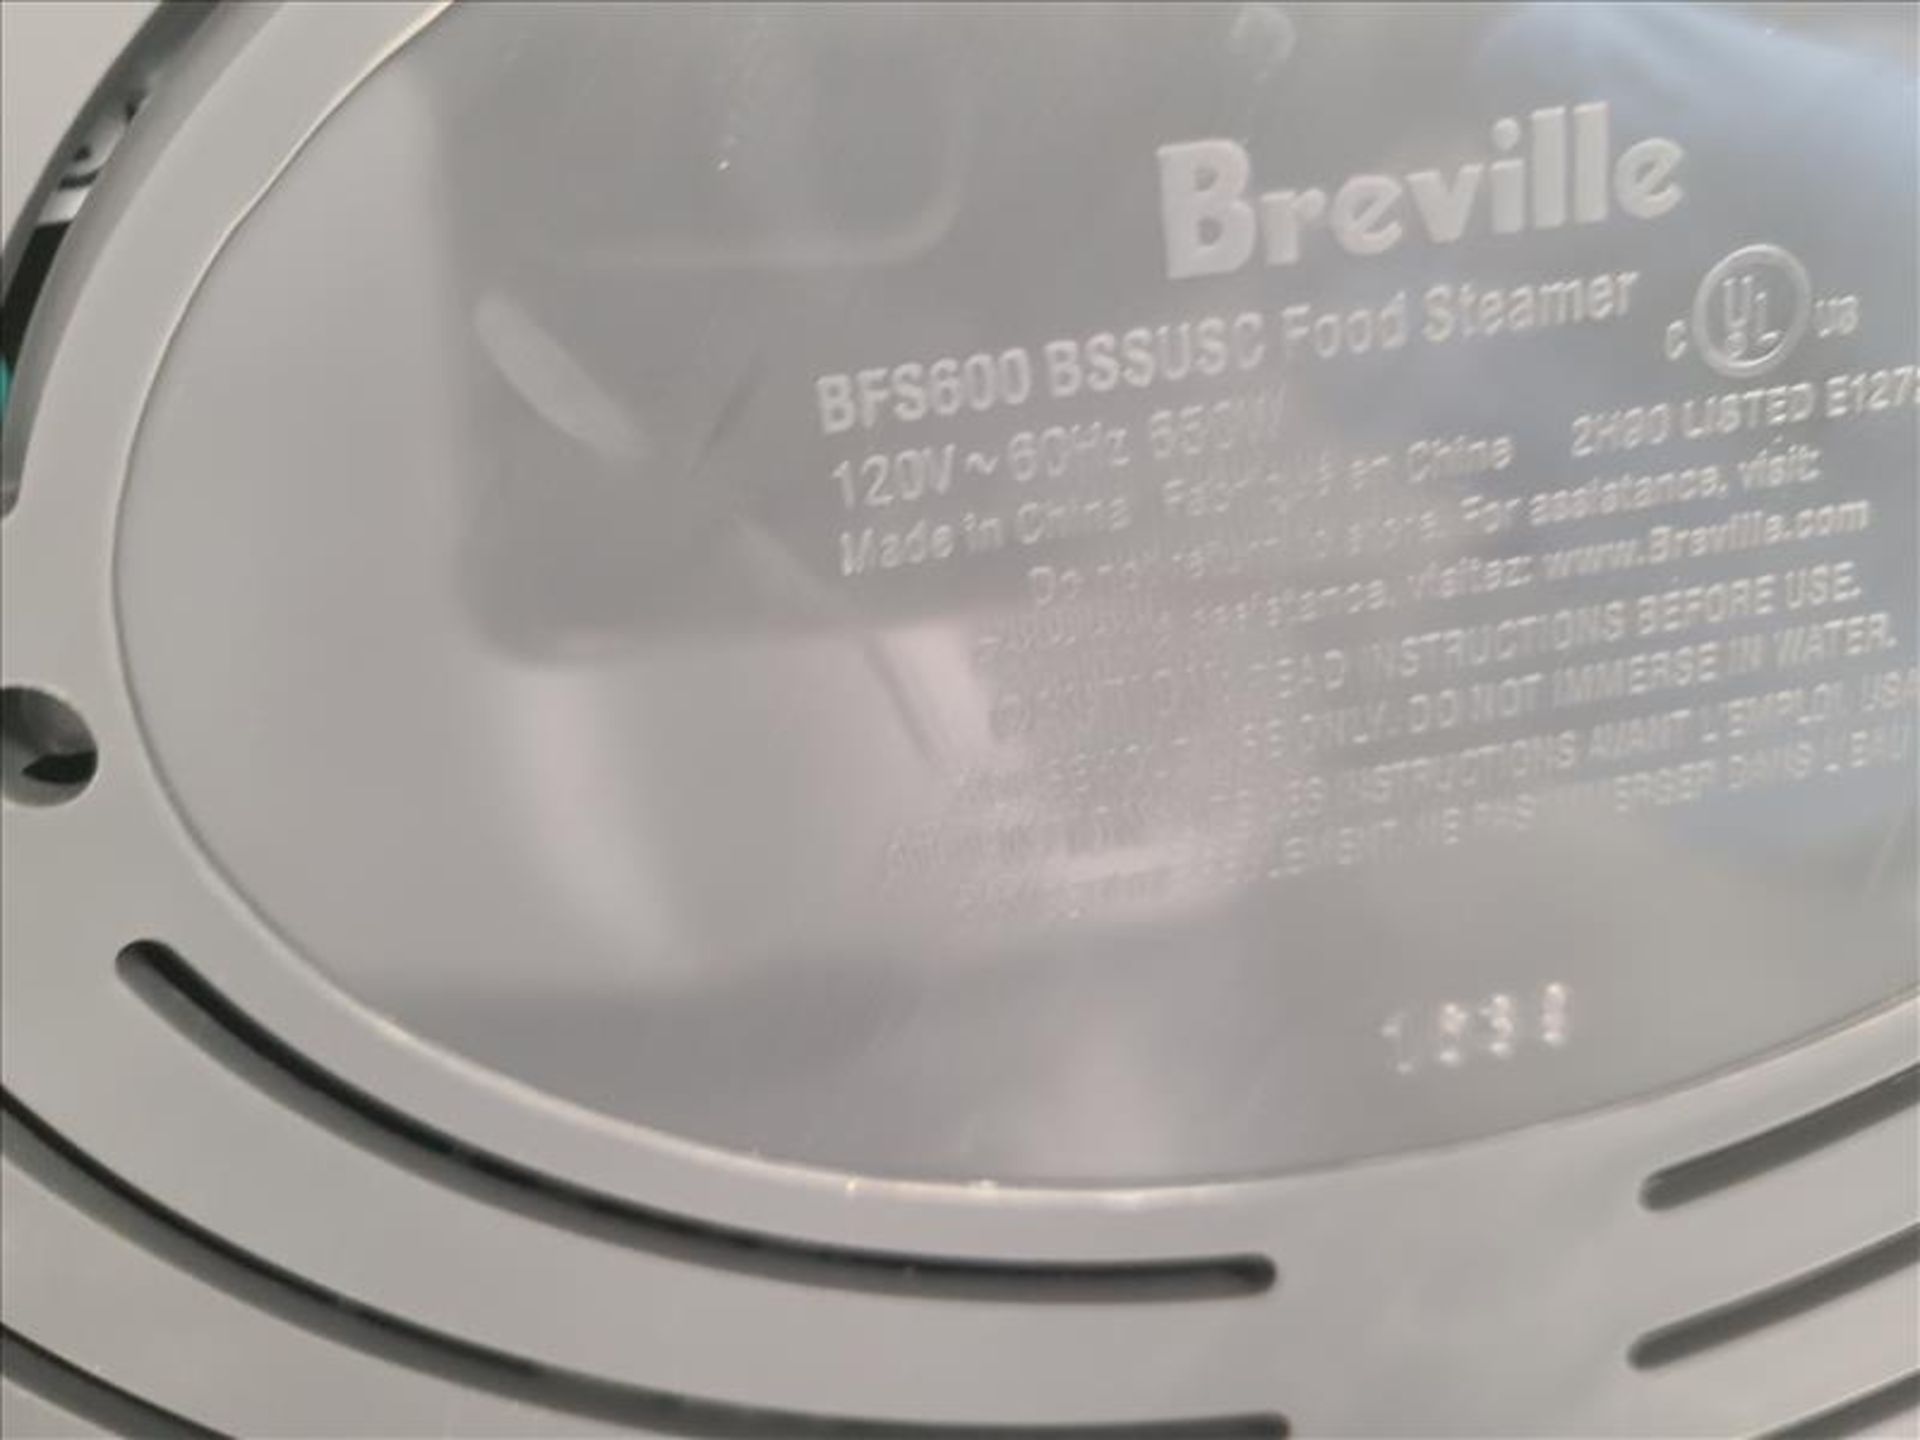 Breville Digital Food Steamer, mod. BFS600 [Loc.Test Kitchen] - Image 4 of 4